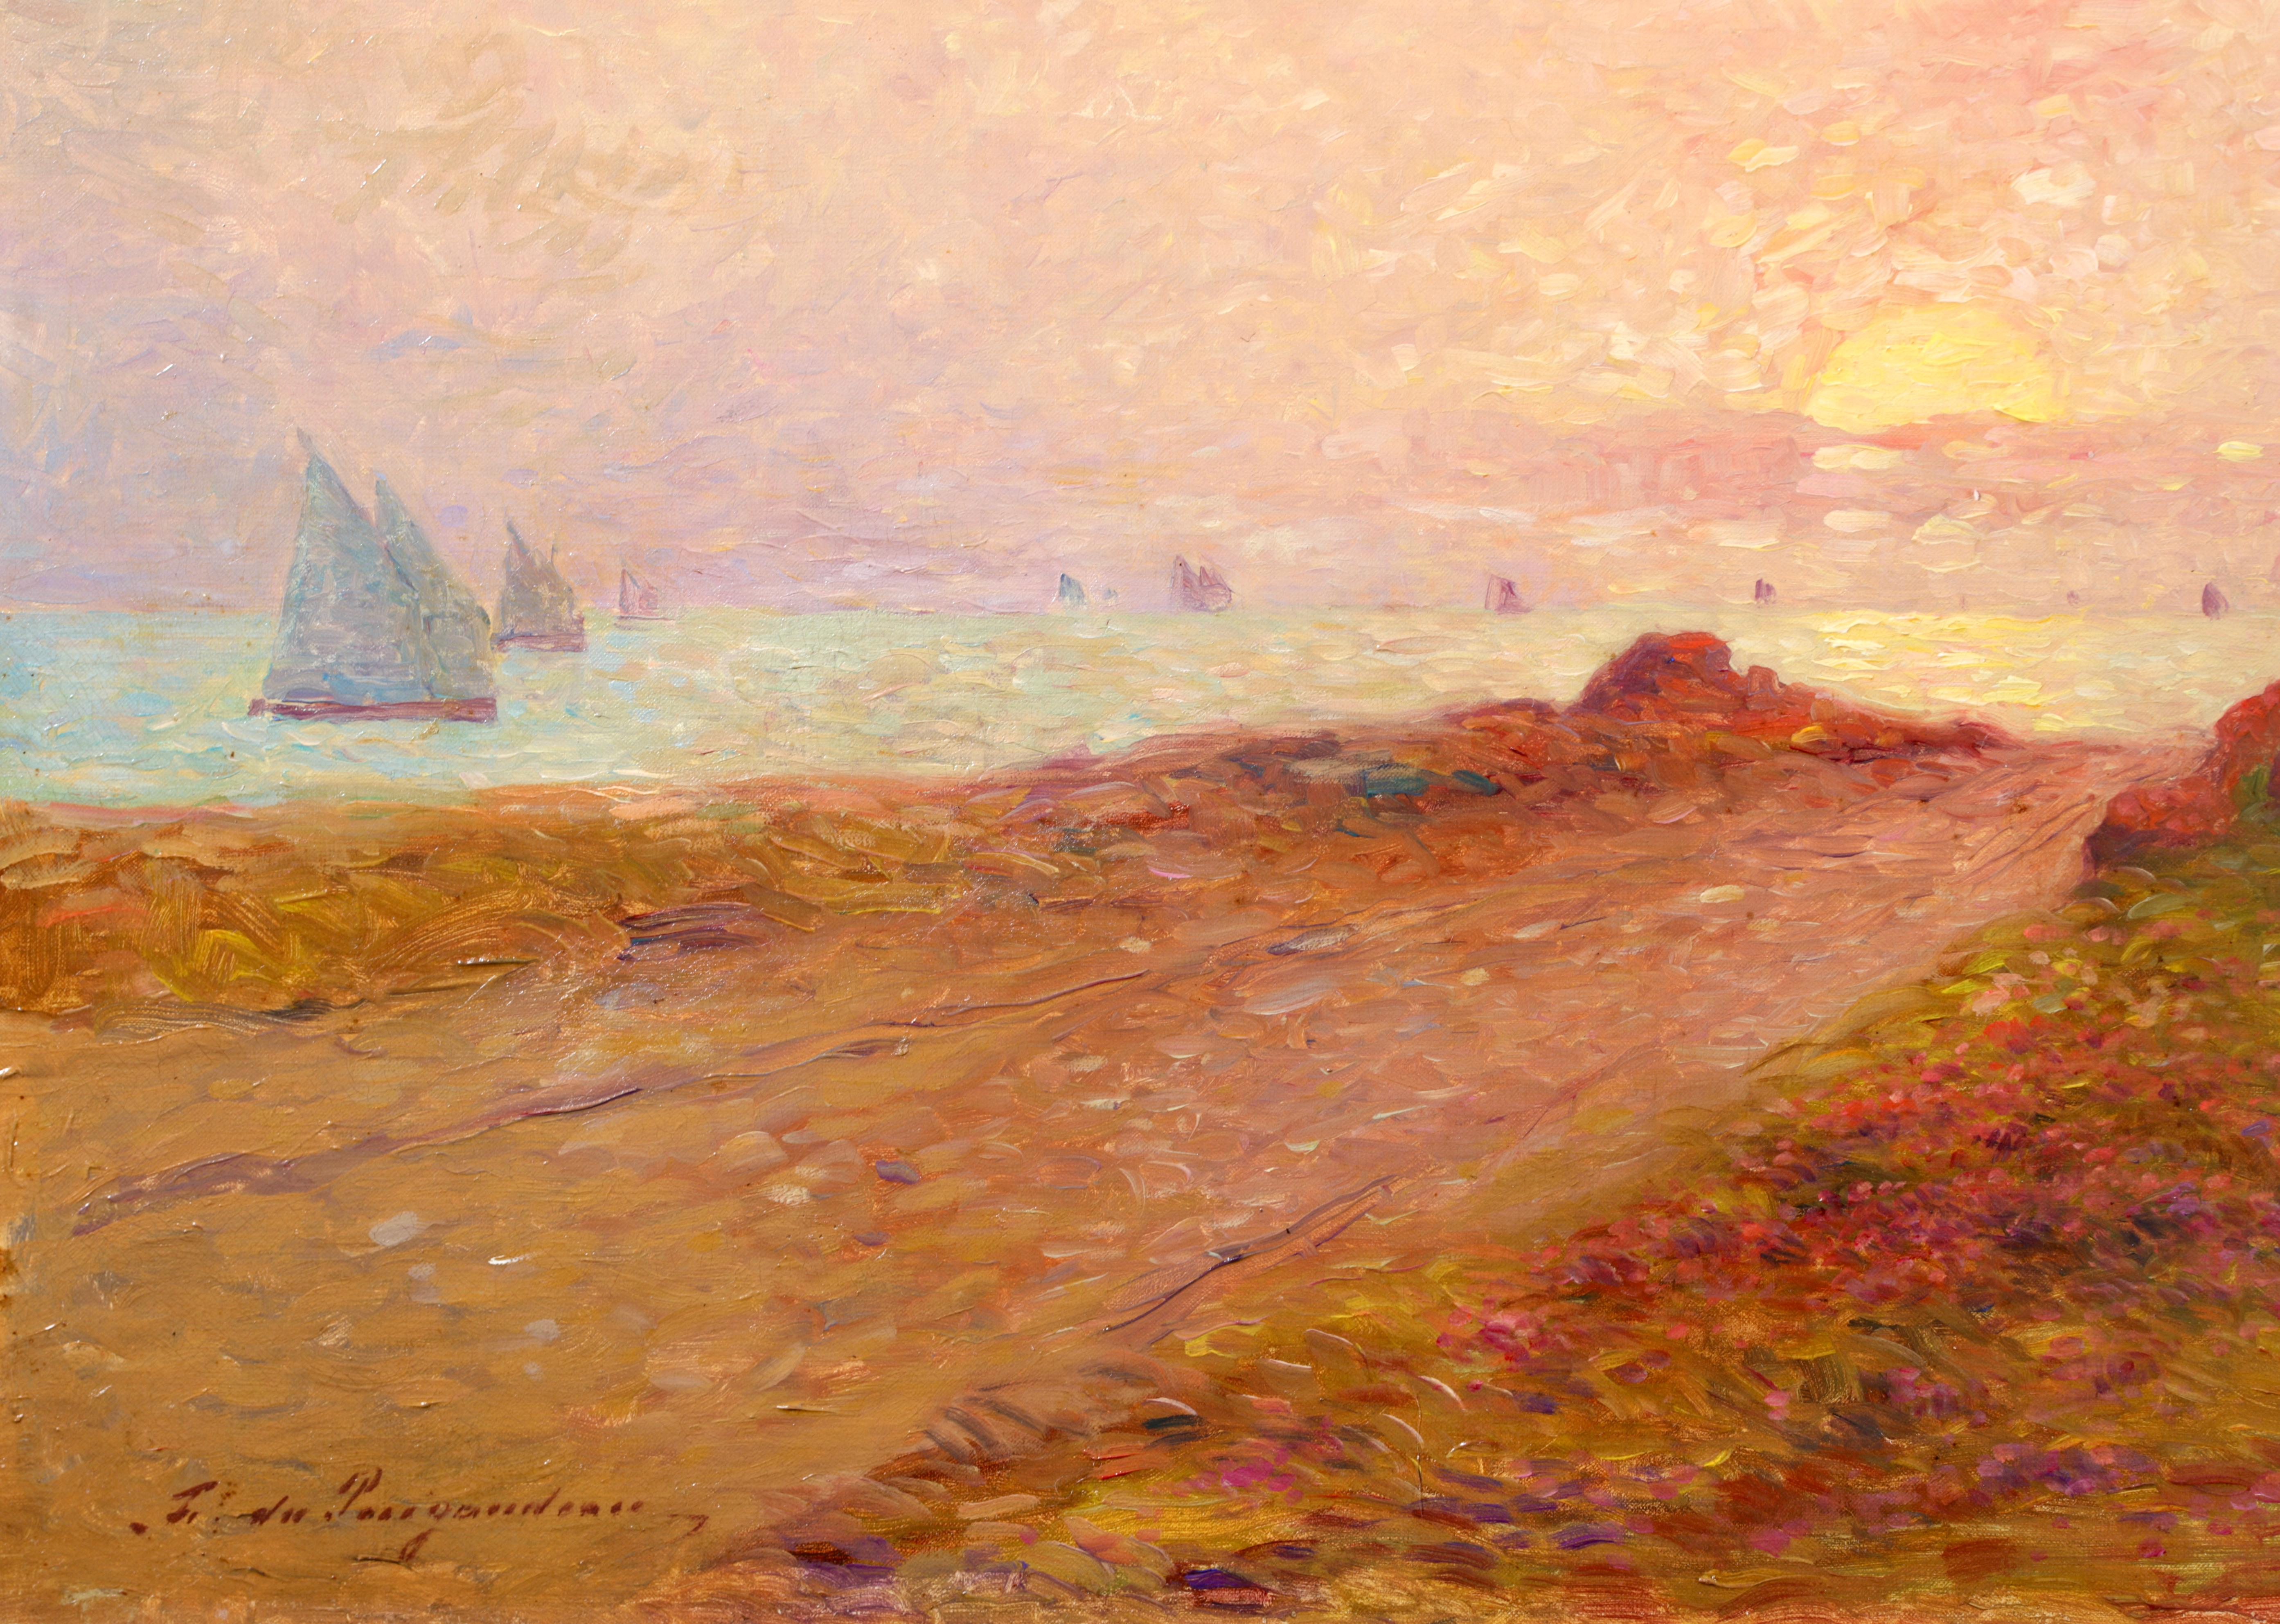 Bateaux sur la mer - Post Impressionist Landscape Oil by Ferdinand du Puigaudeau 7